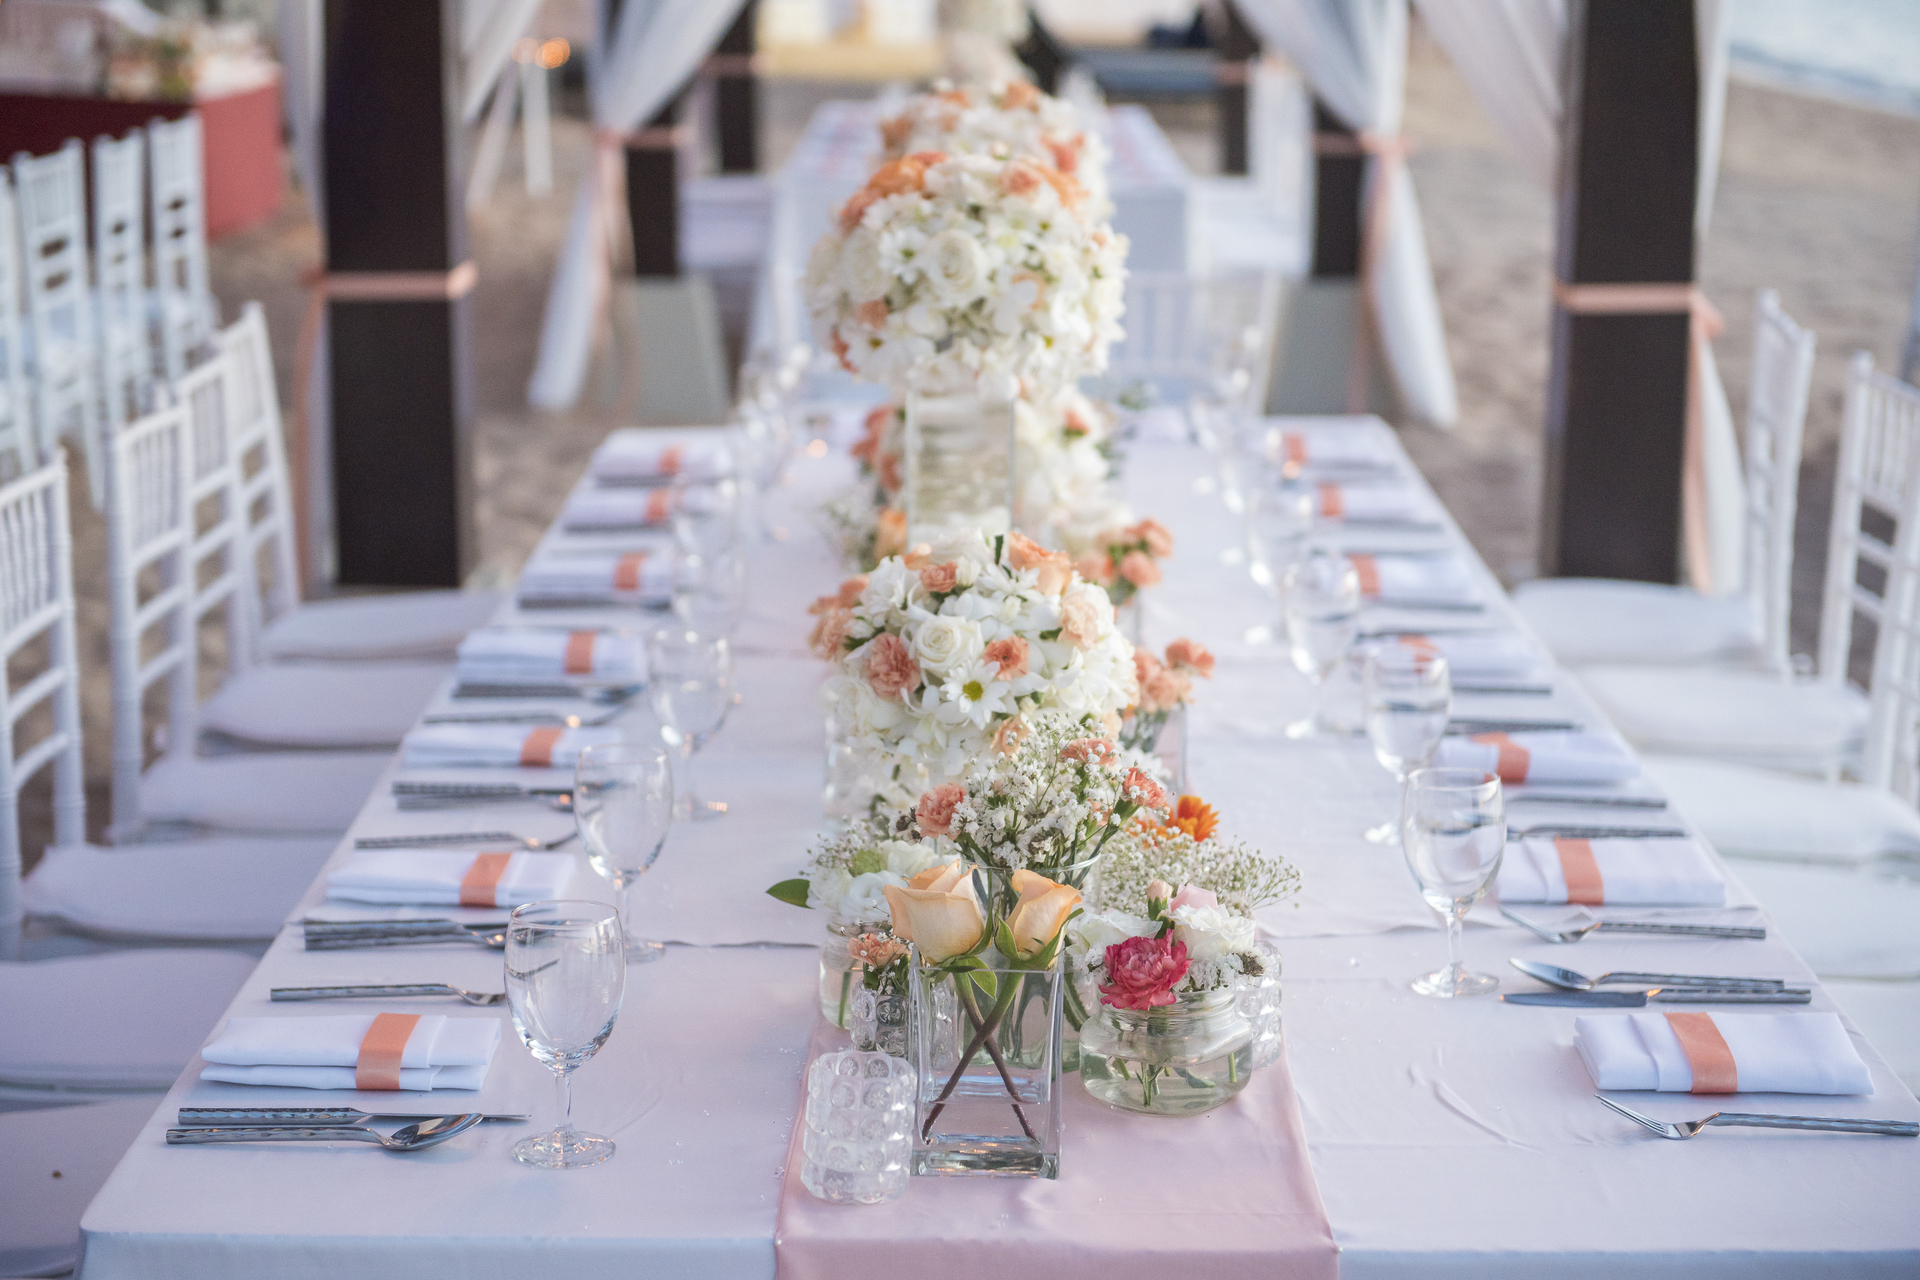 Elegancji stół ślubny, przygotowany na polskie wesele z tradycjami. Na stole piękna ślubna zastawa